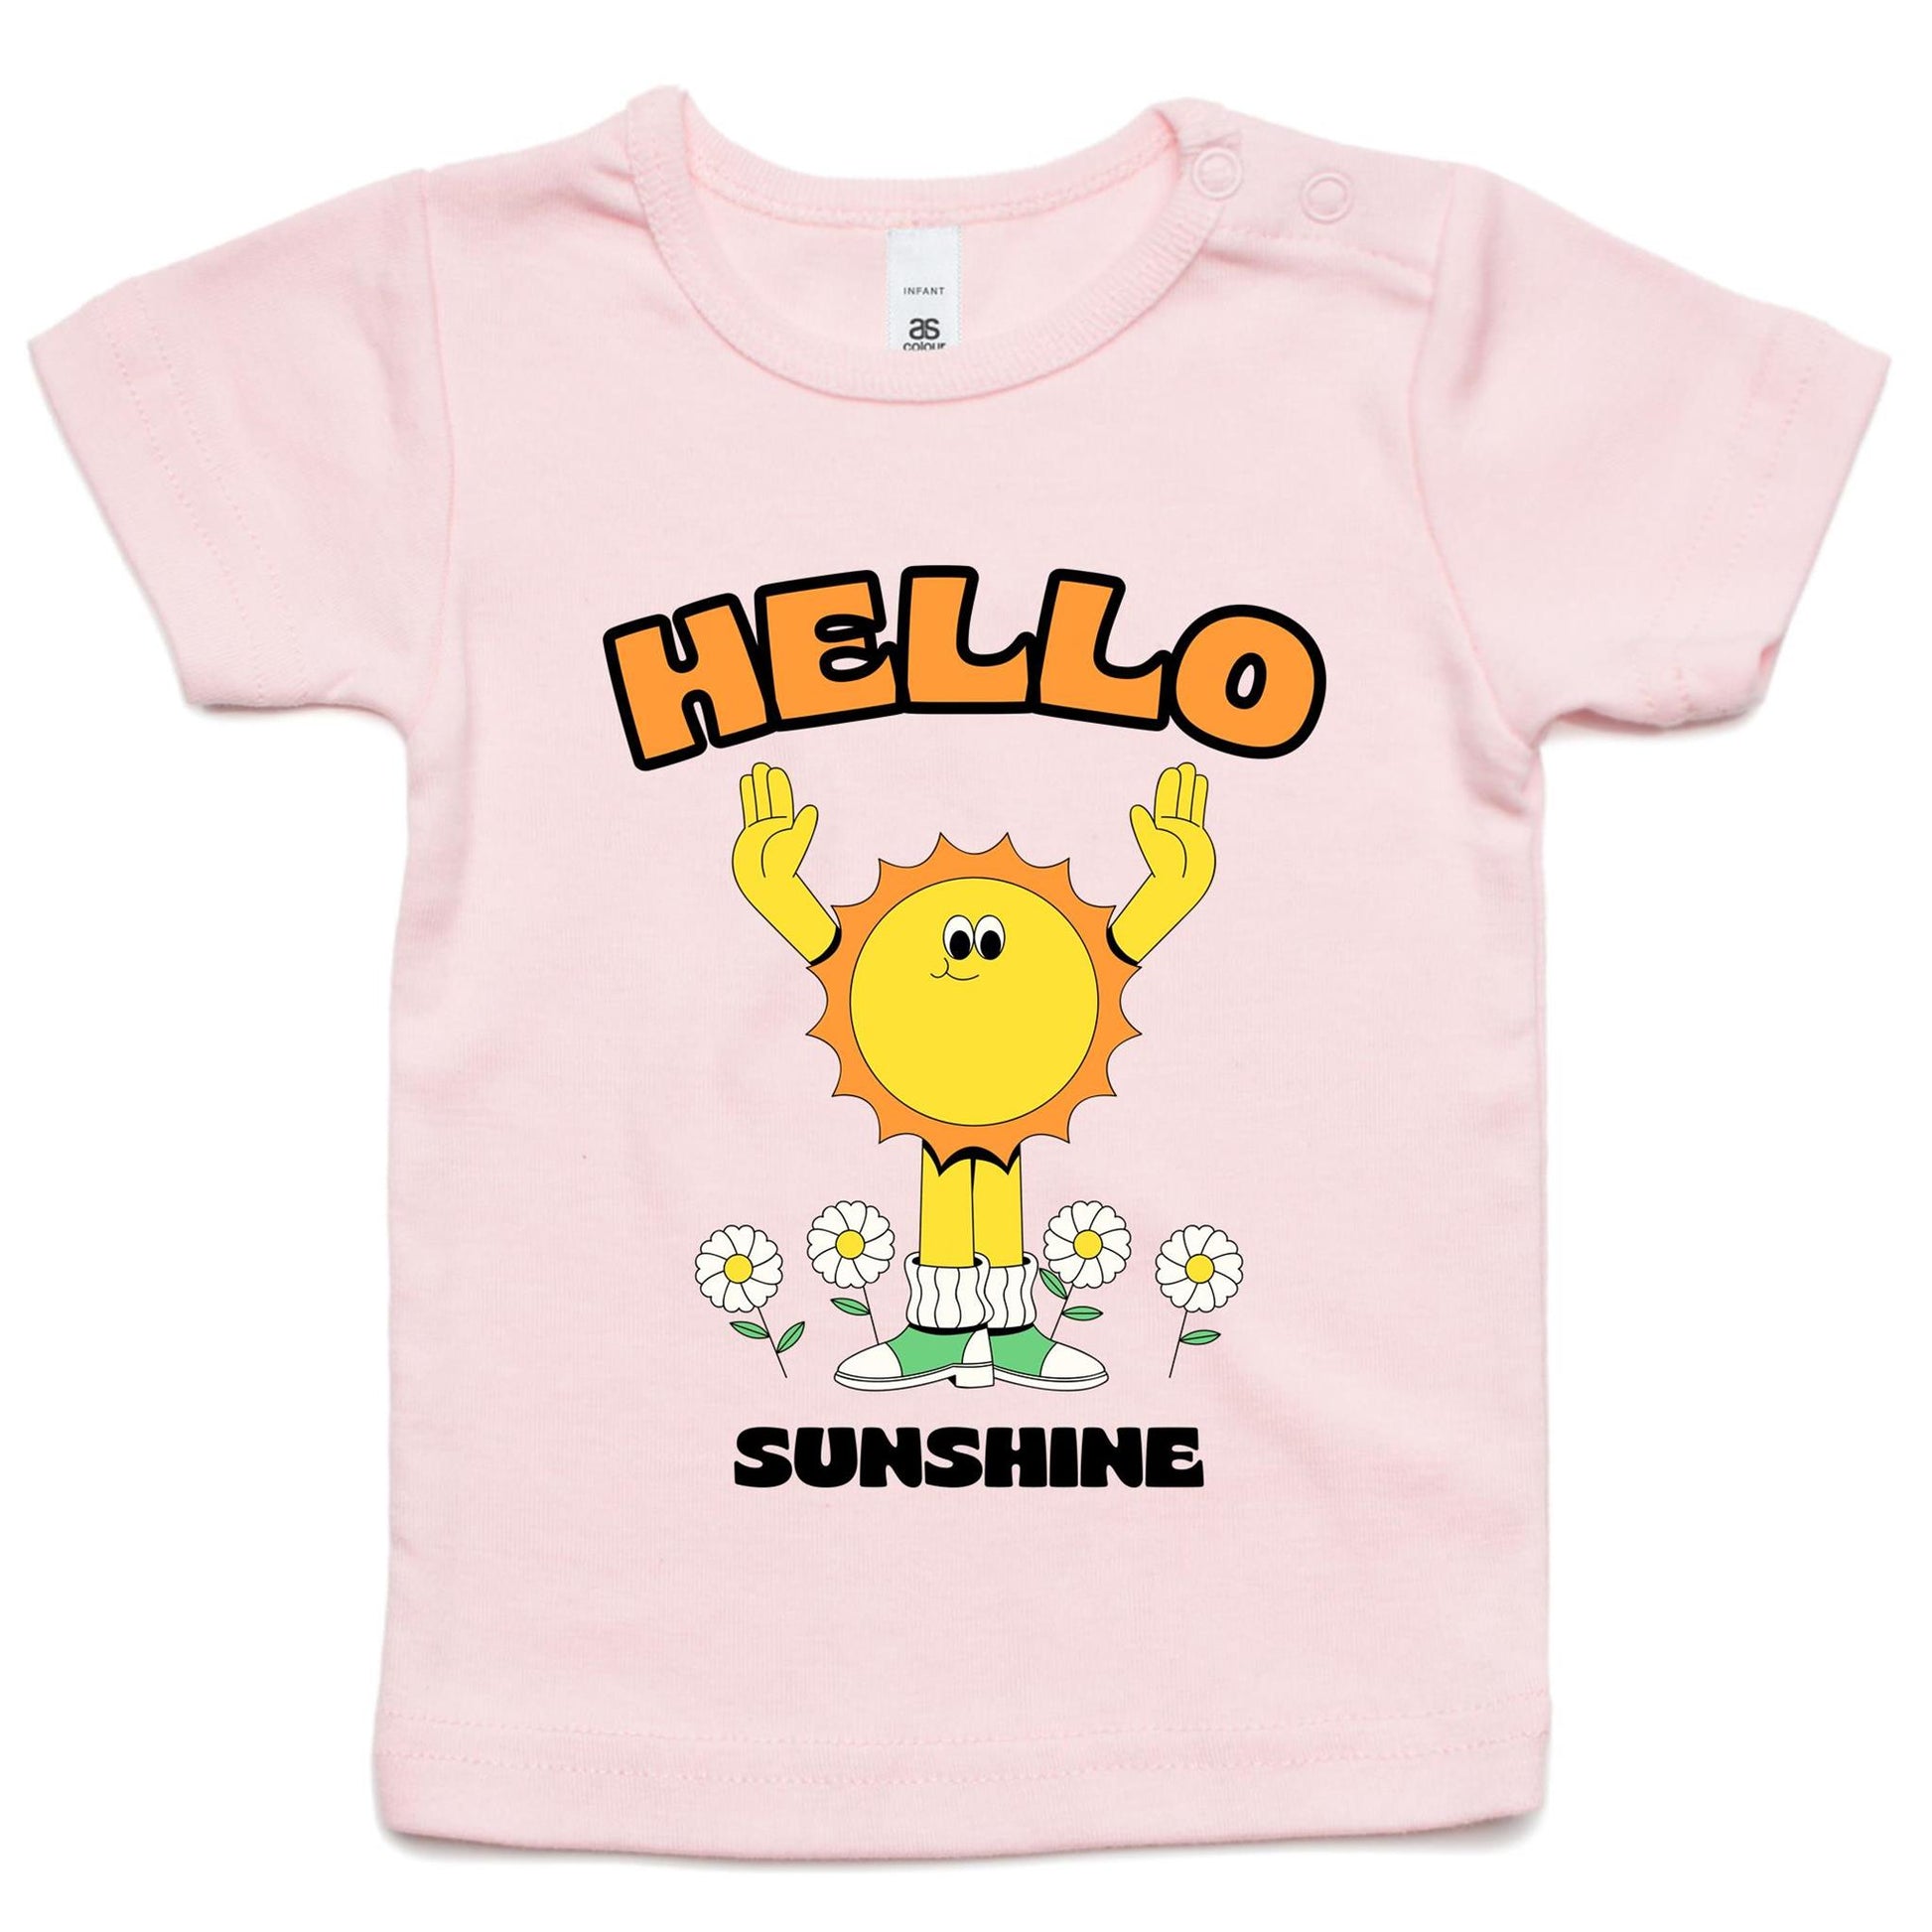 Hello Sunshine - Baby T-shirt Pink Baby T-shirt Retro Summer